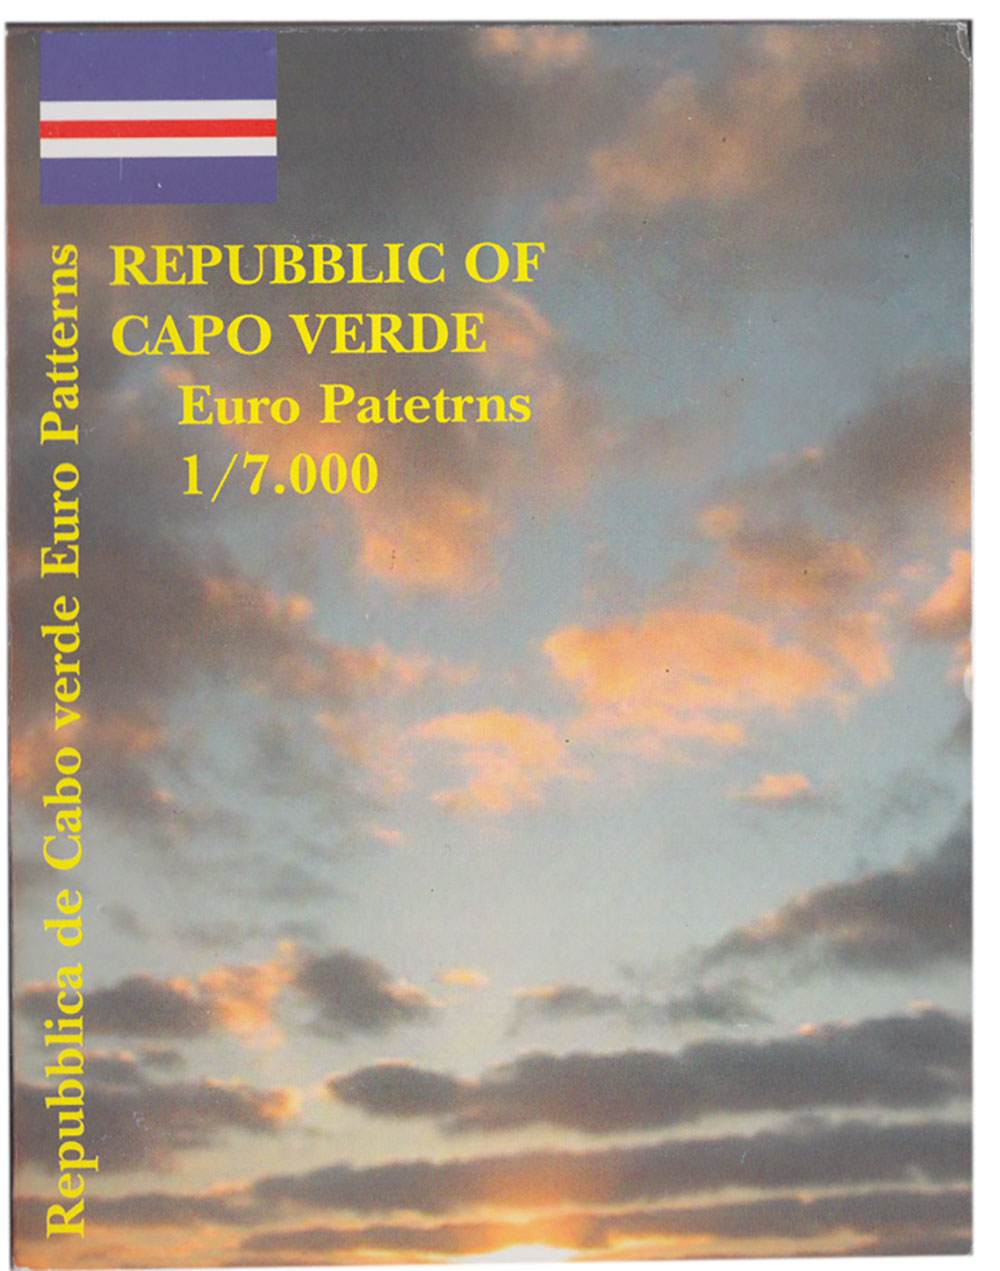 CAPO VERDE 2004 serie completa 8 monete coin collection prova